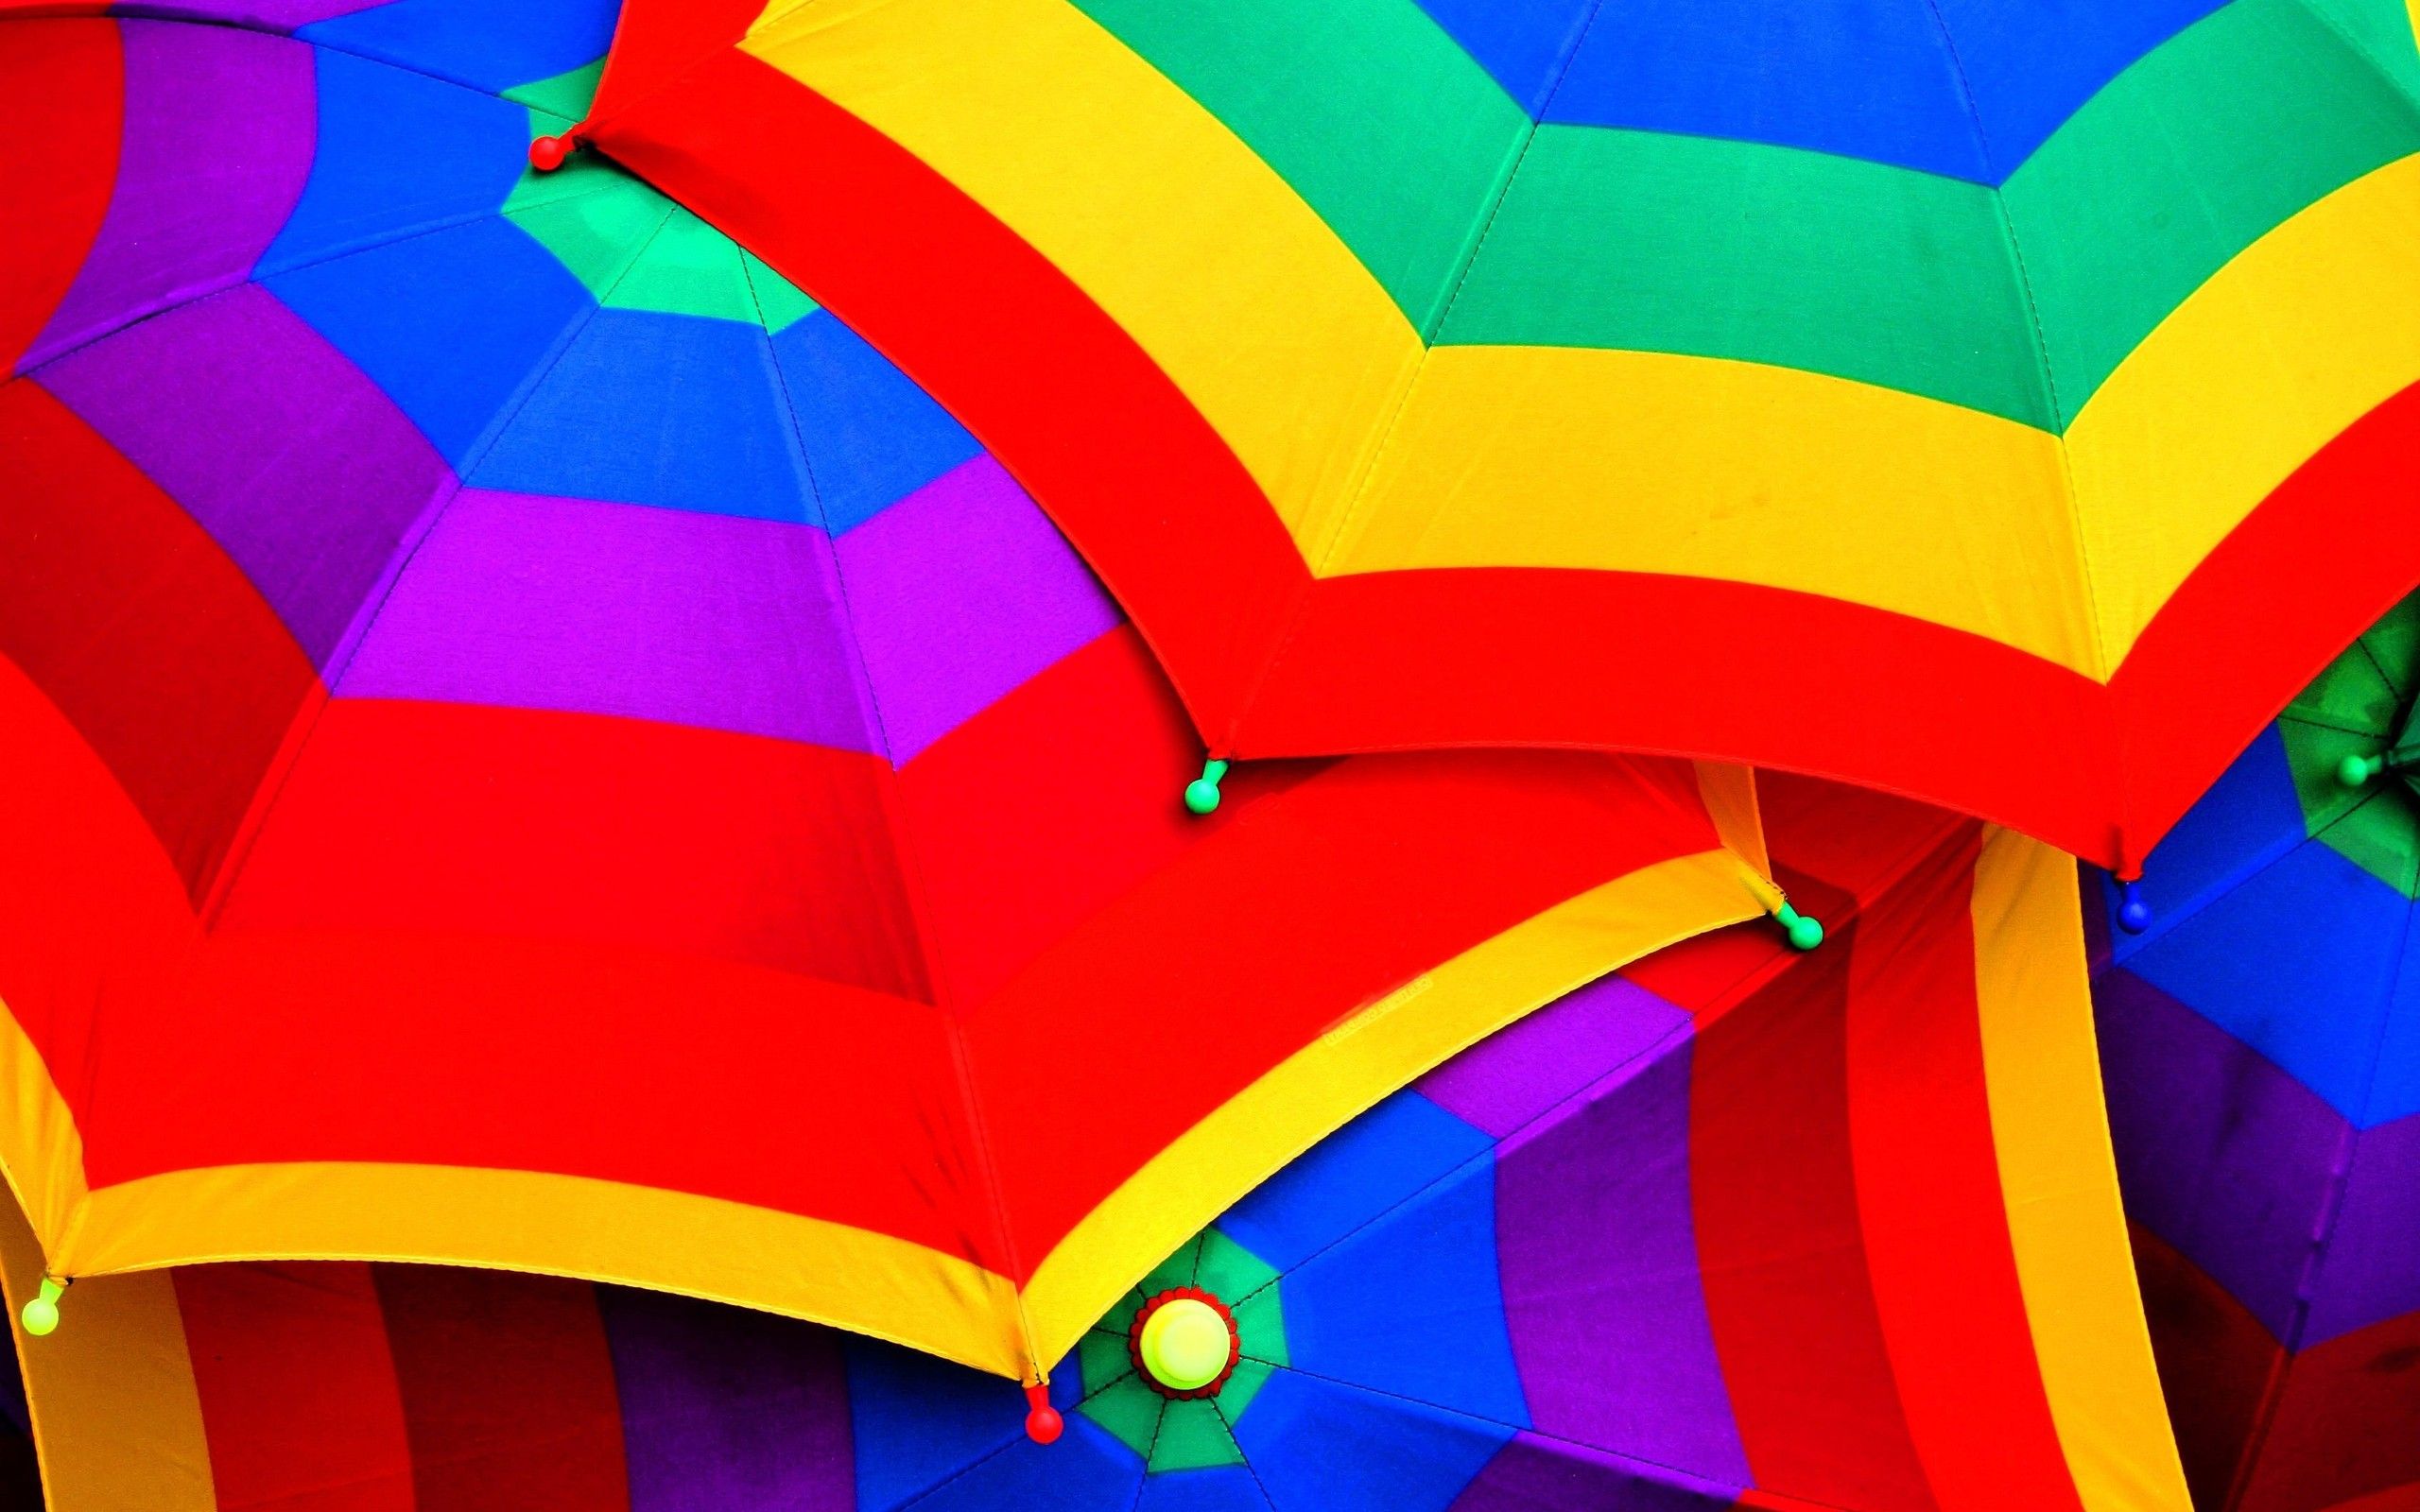 عکس چتر های رنگارنگ واقعی باز شده با کیفیت خوب